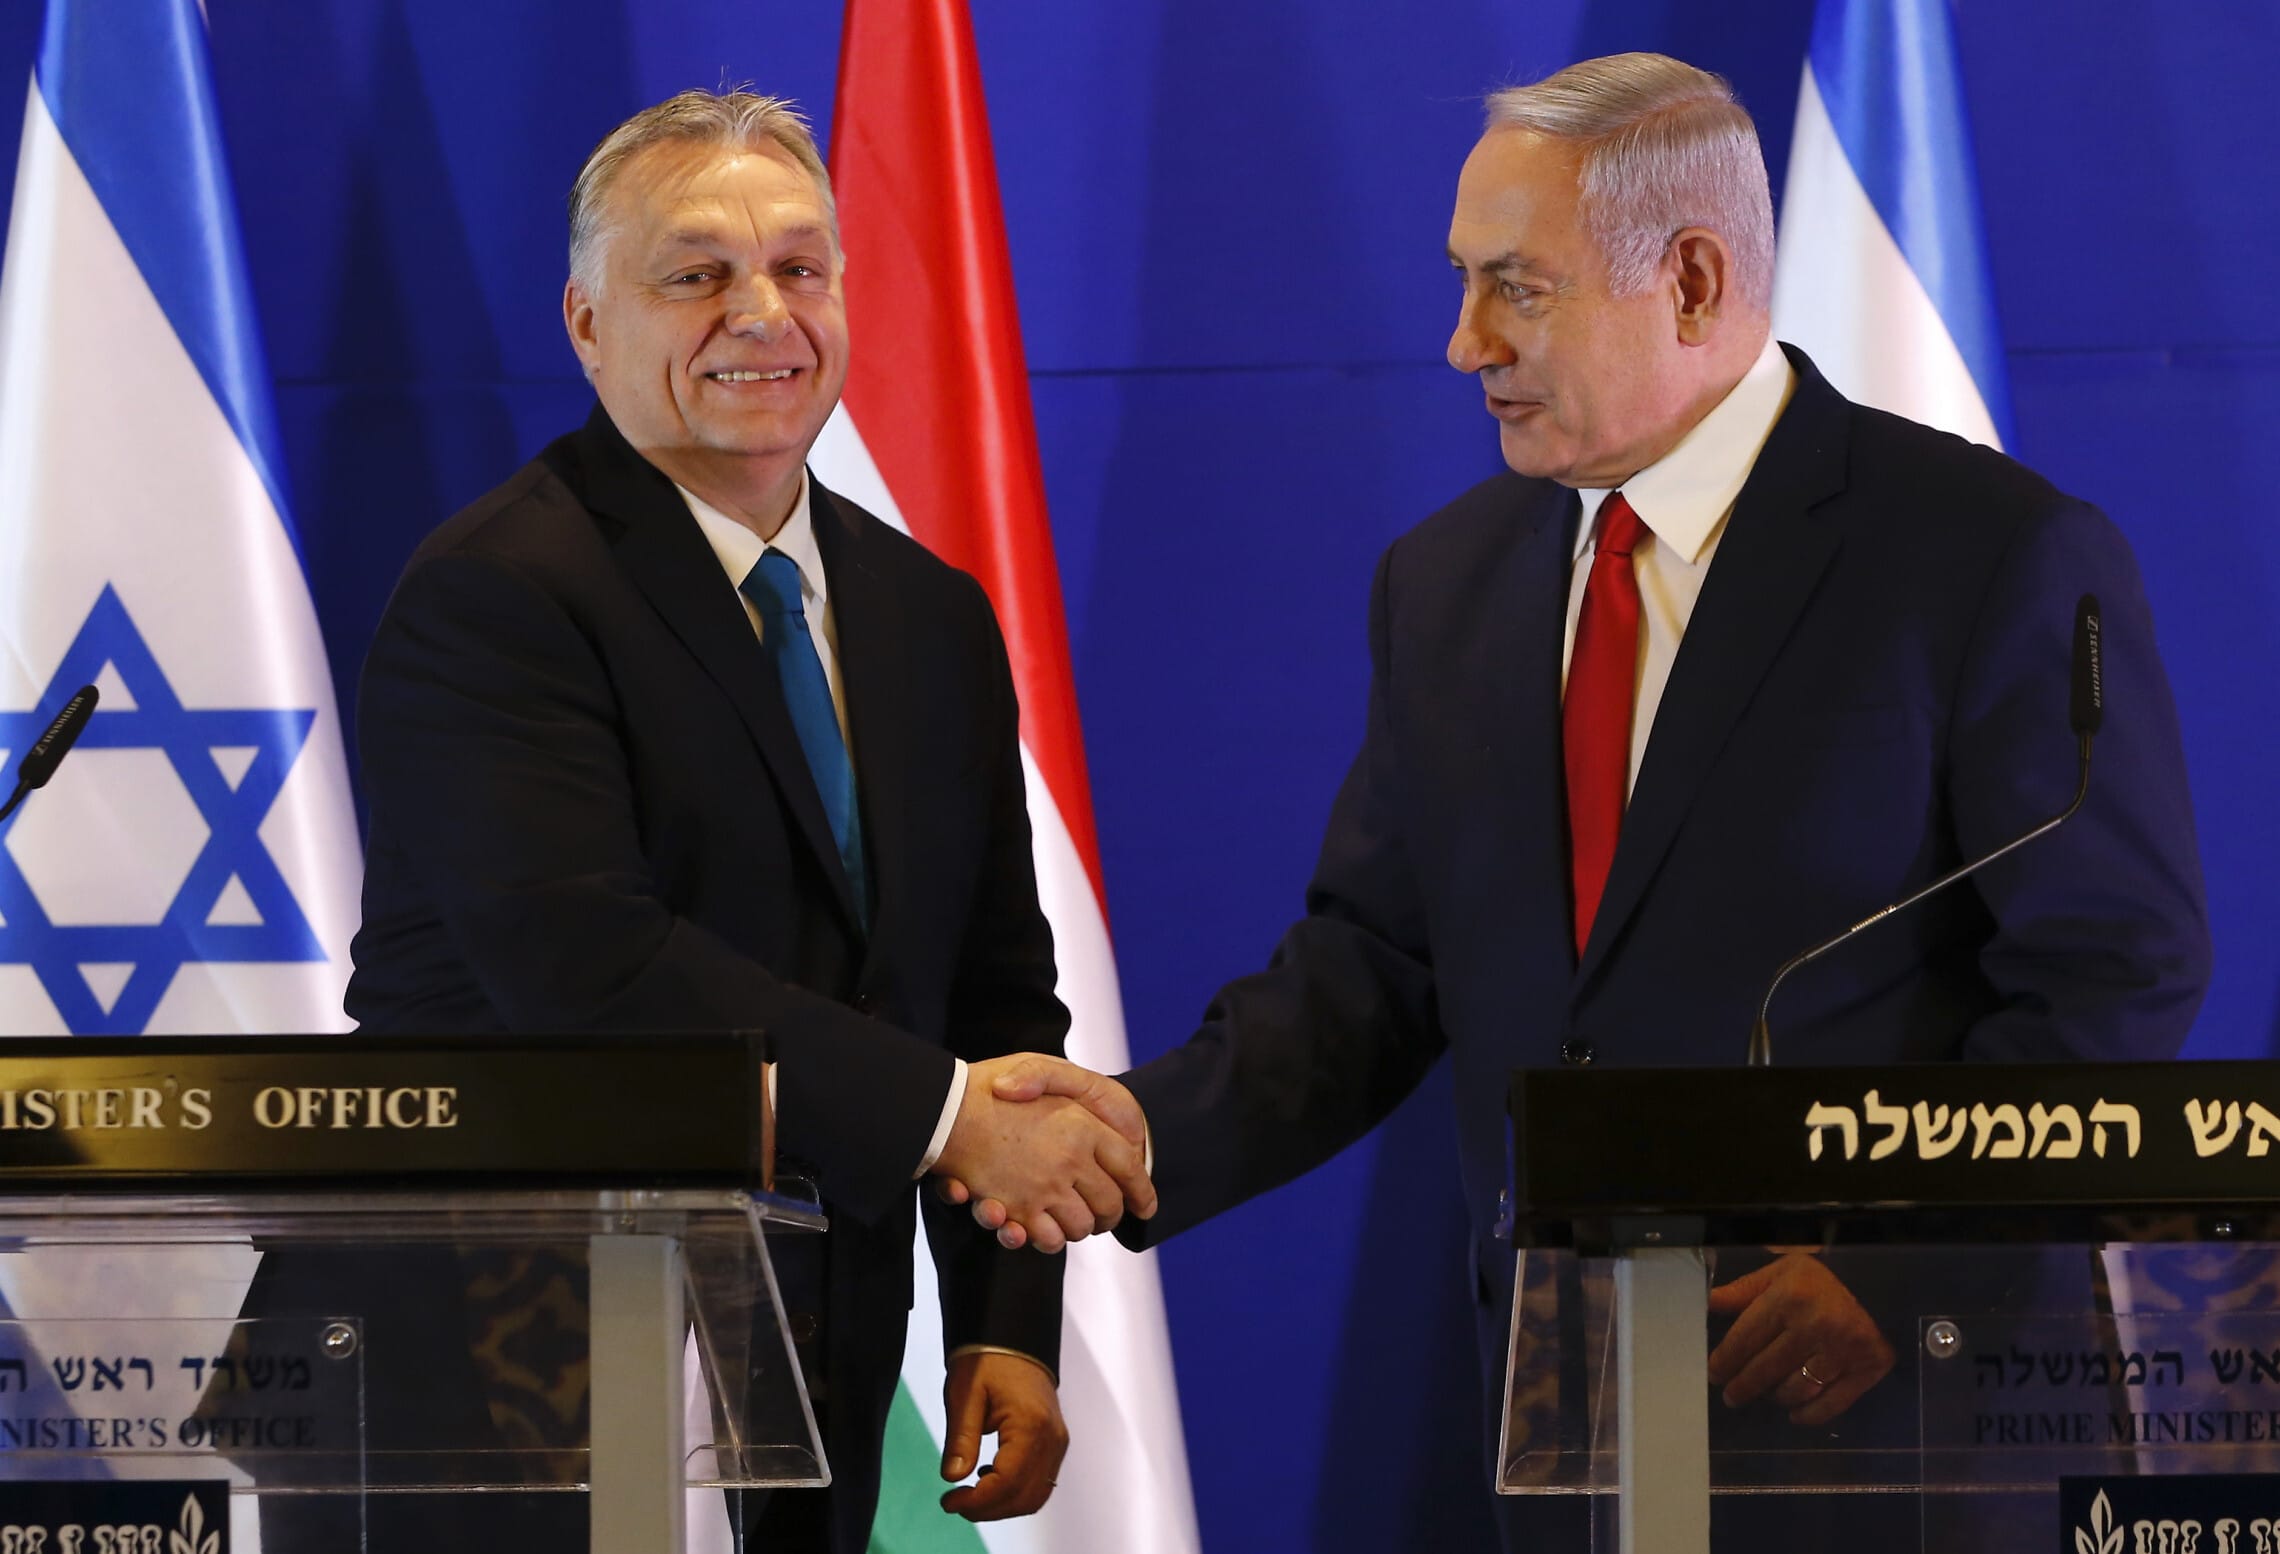 ראש הממשלה בנימין נתניהו עם ראש ממשלת הונגריה ויקטור אורבן במסיבת עיתונאים בירושלים, 19 בפברואר 2019 (צילום: AP Photo/Ariel Schalit, Pool)